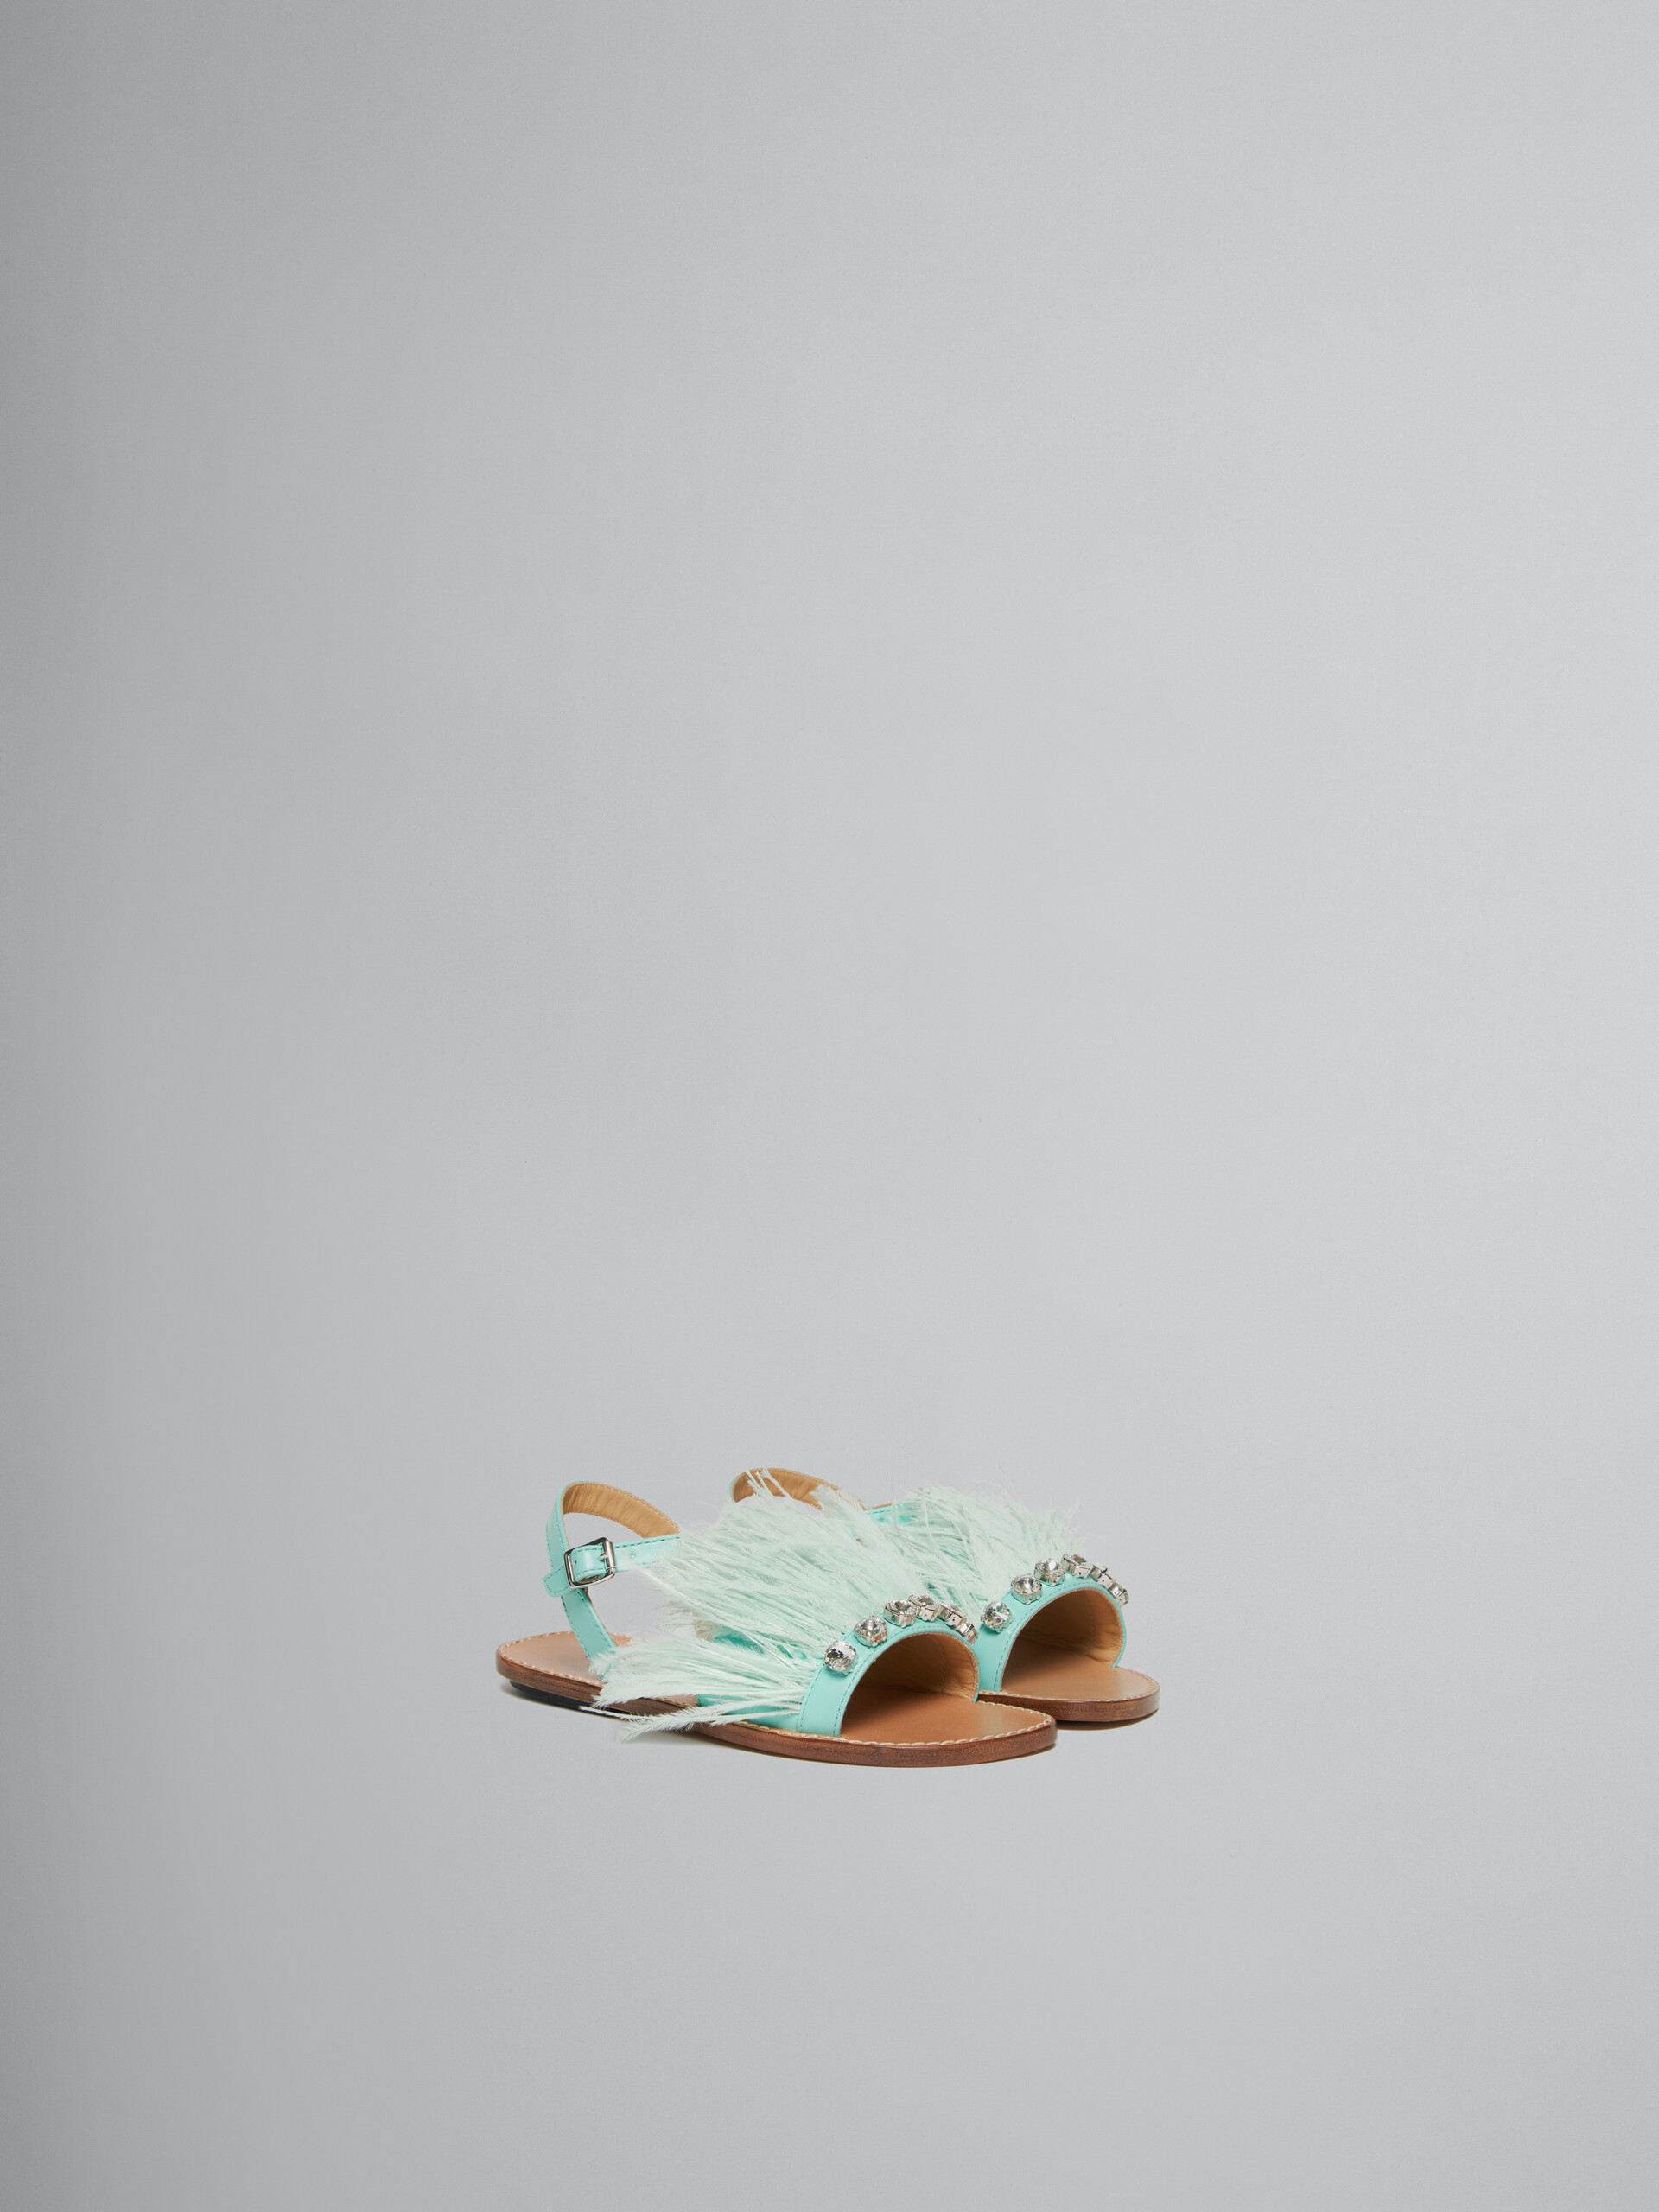 Sandalo In Pelle Turchese Con Piume Di Marabù - kids - Image 2